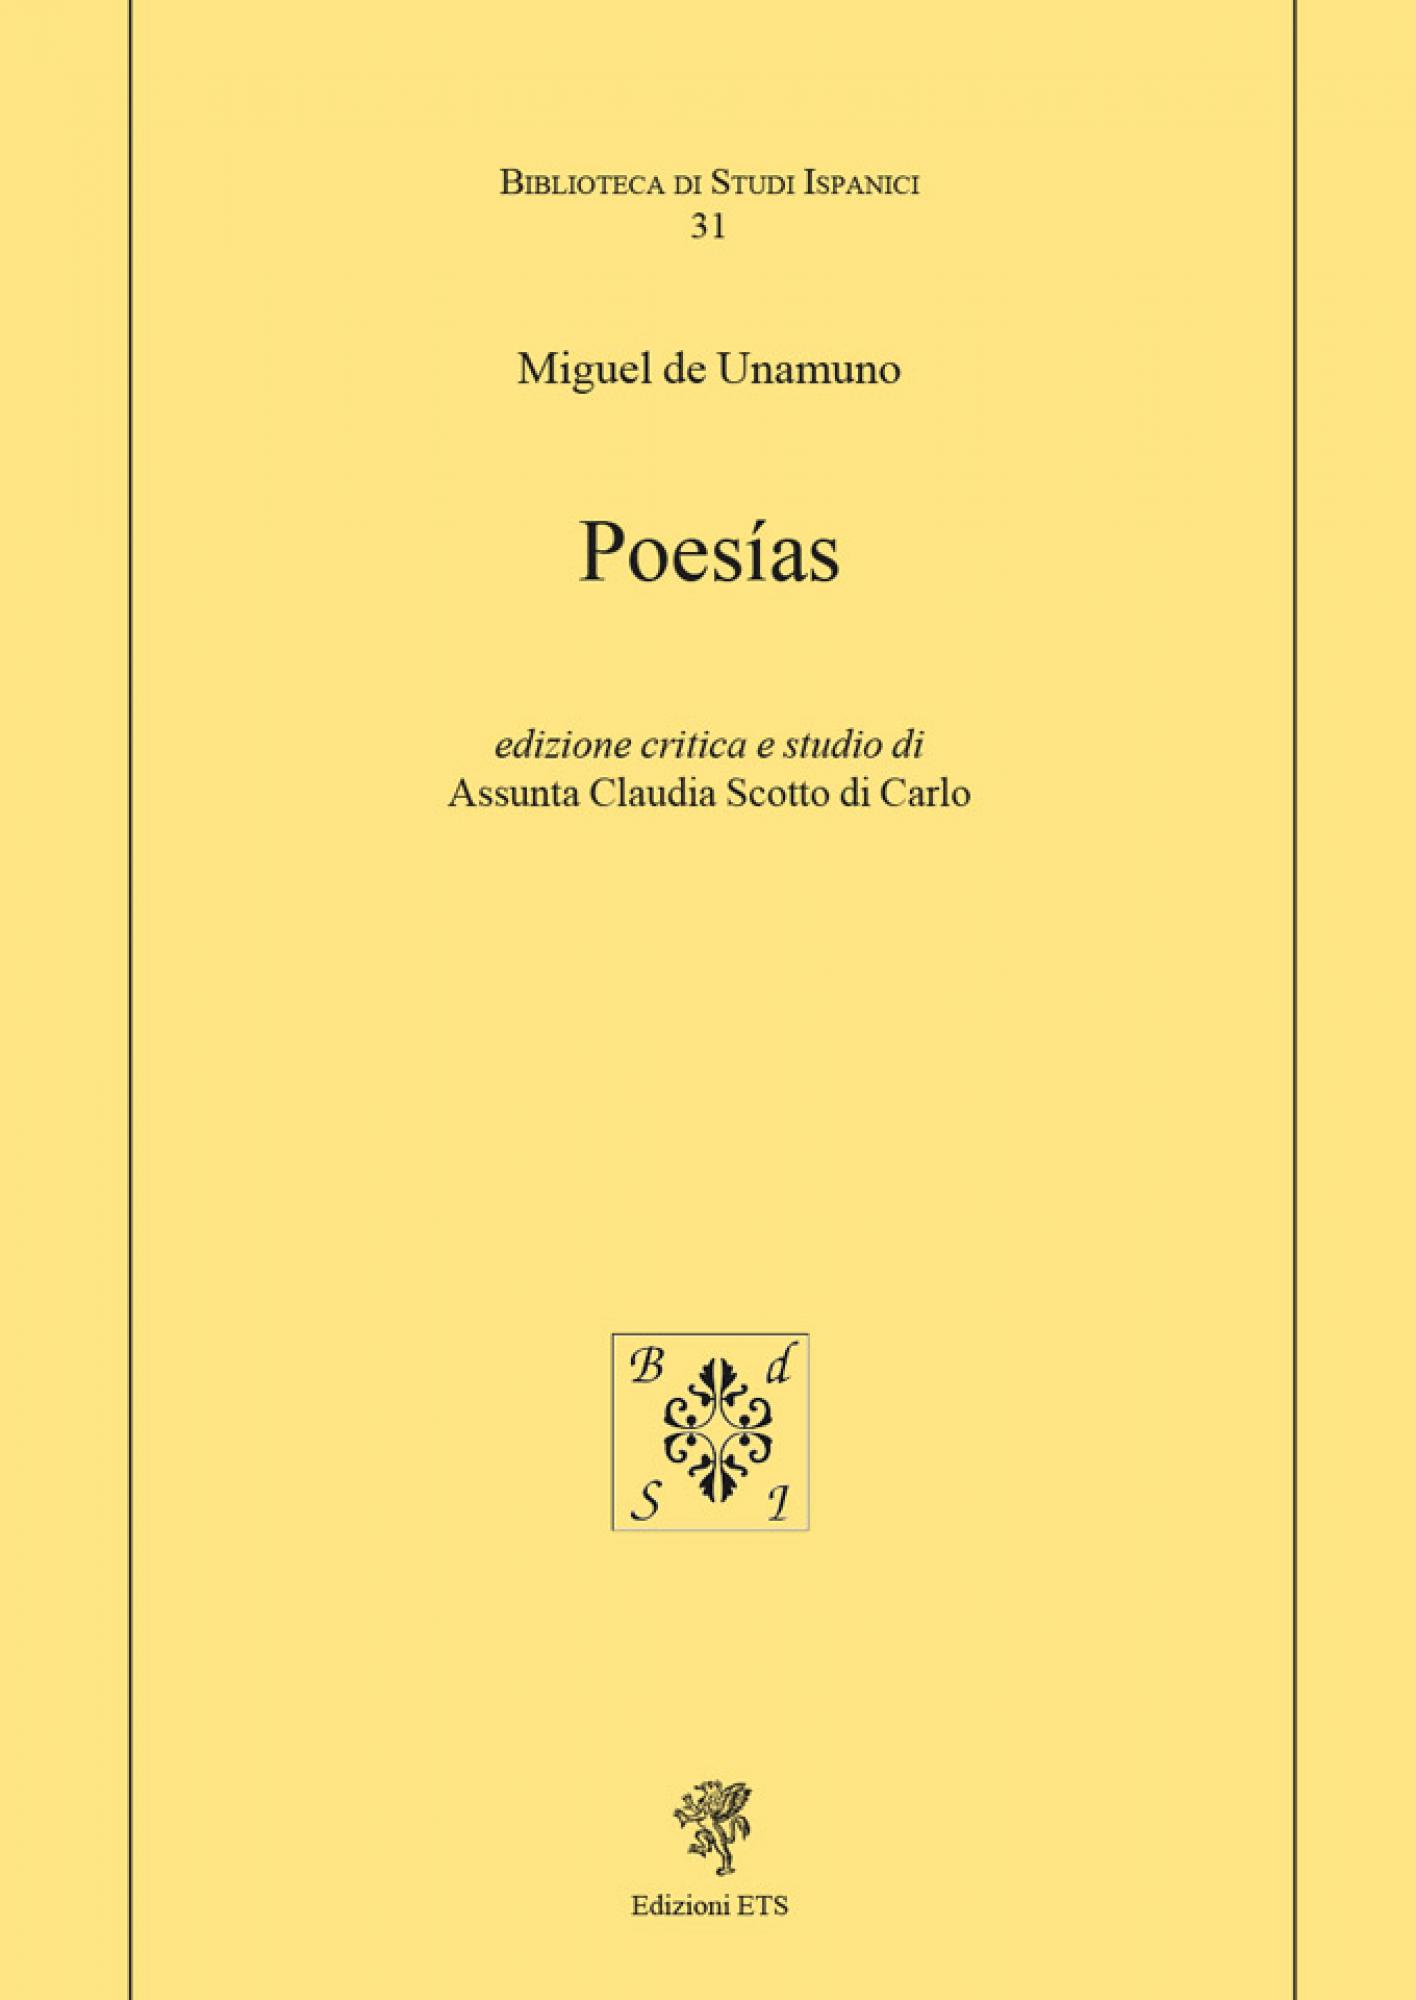 Poesías.edizione critica e studio